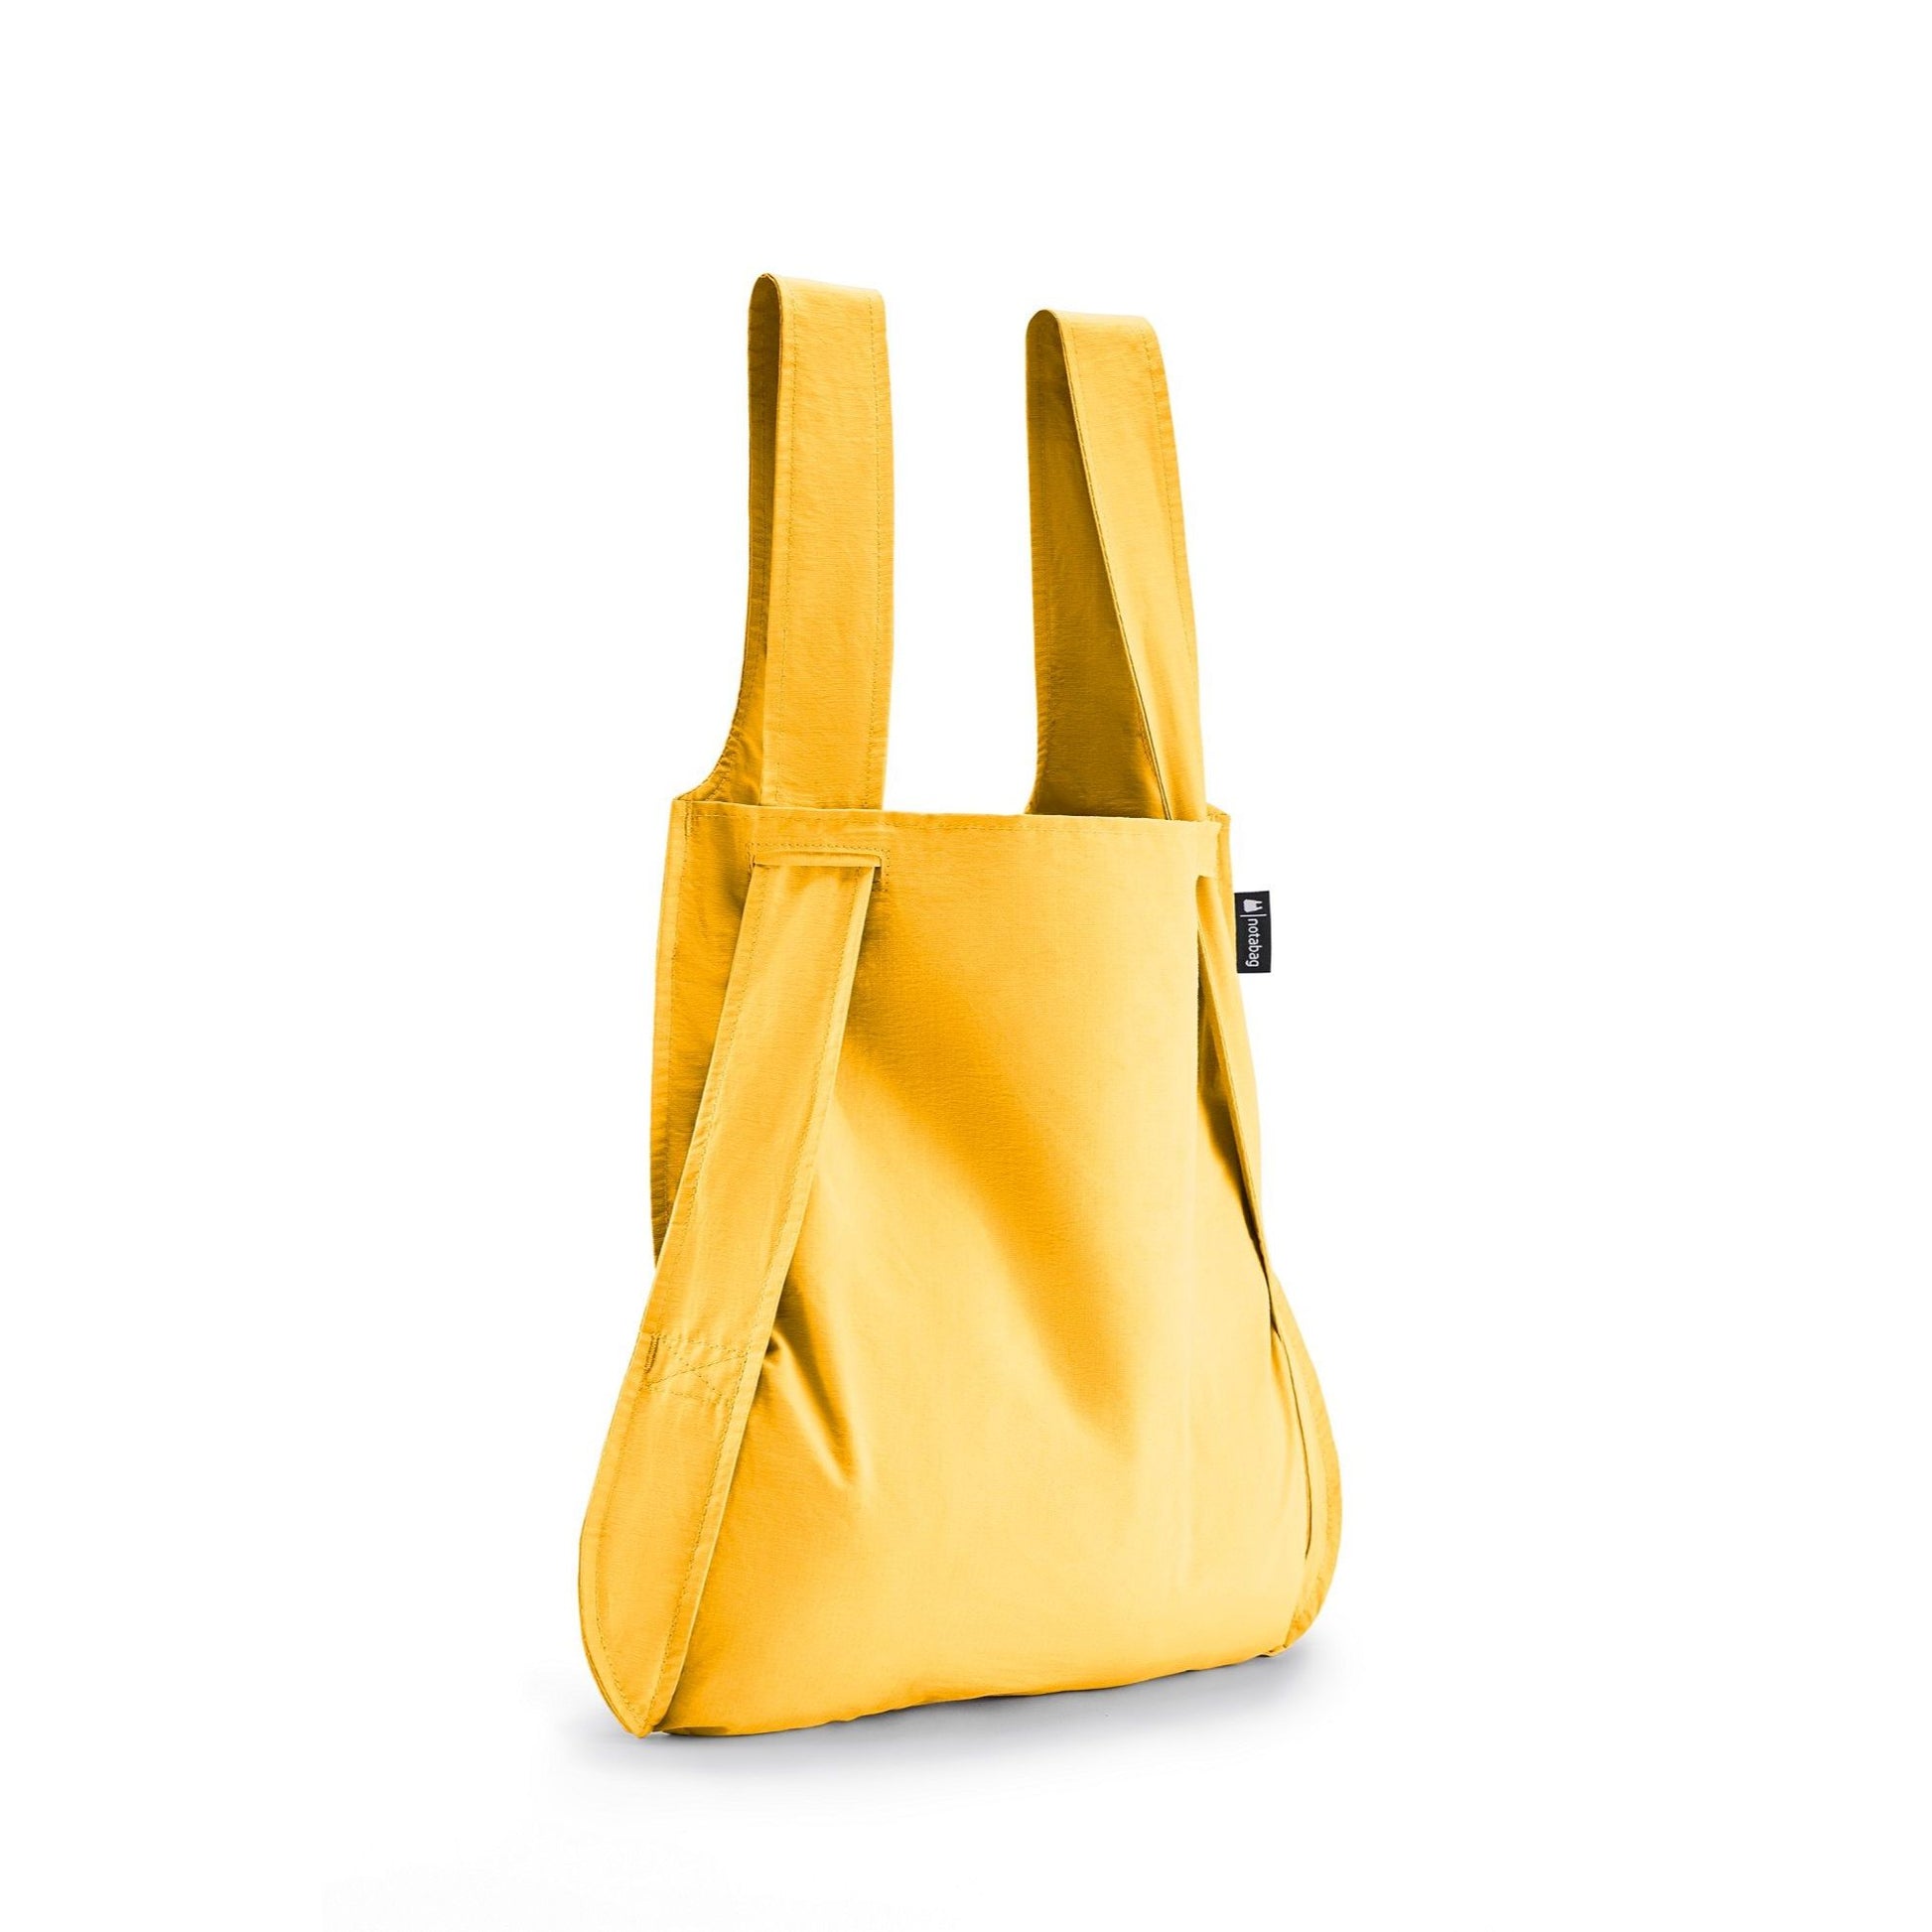 Notabag original golden foldable bag and backpack